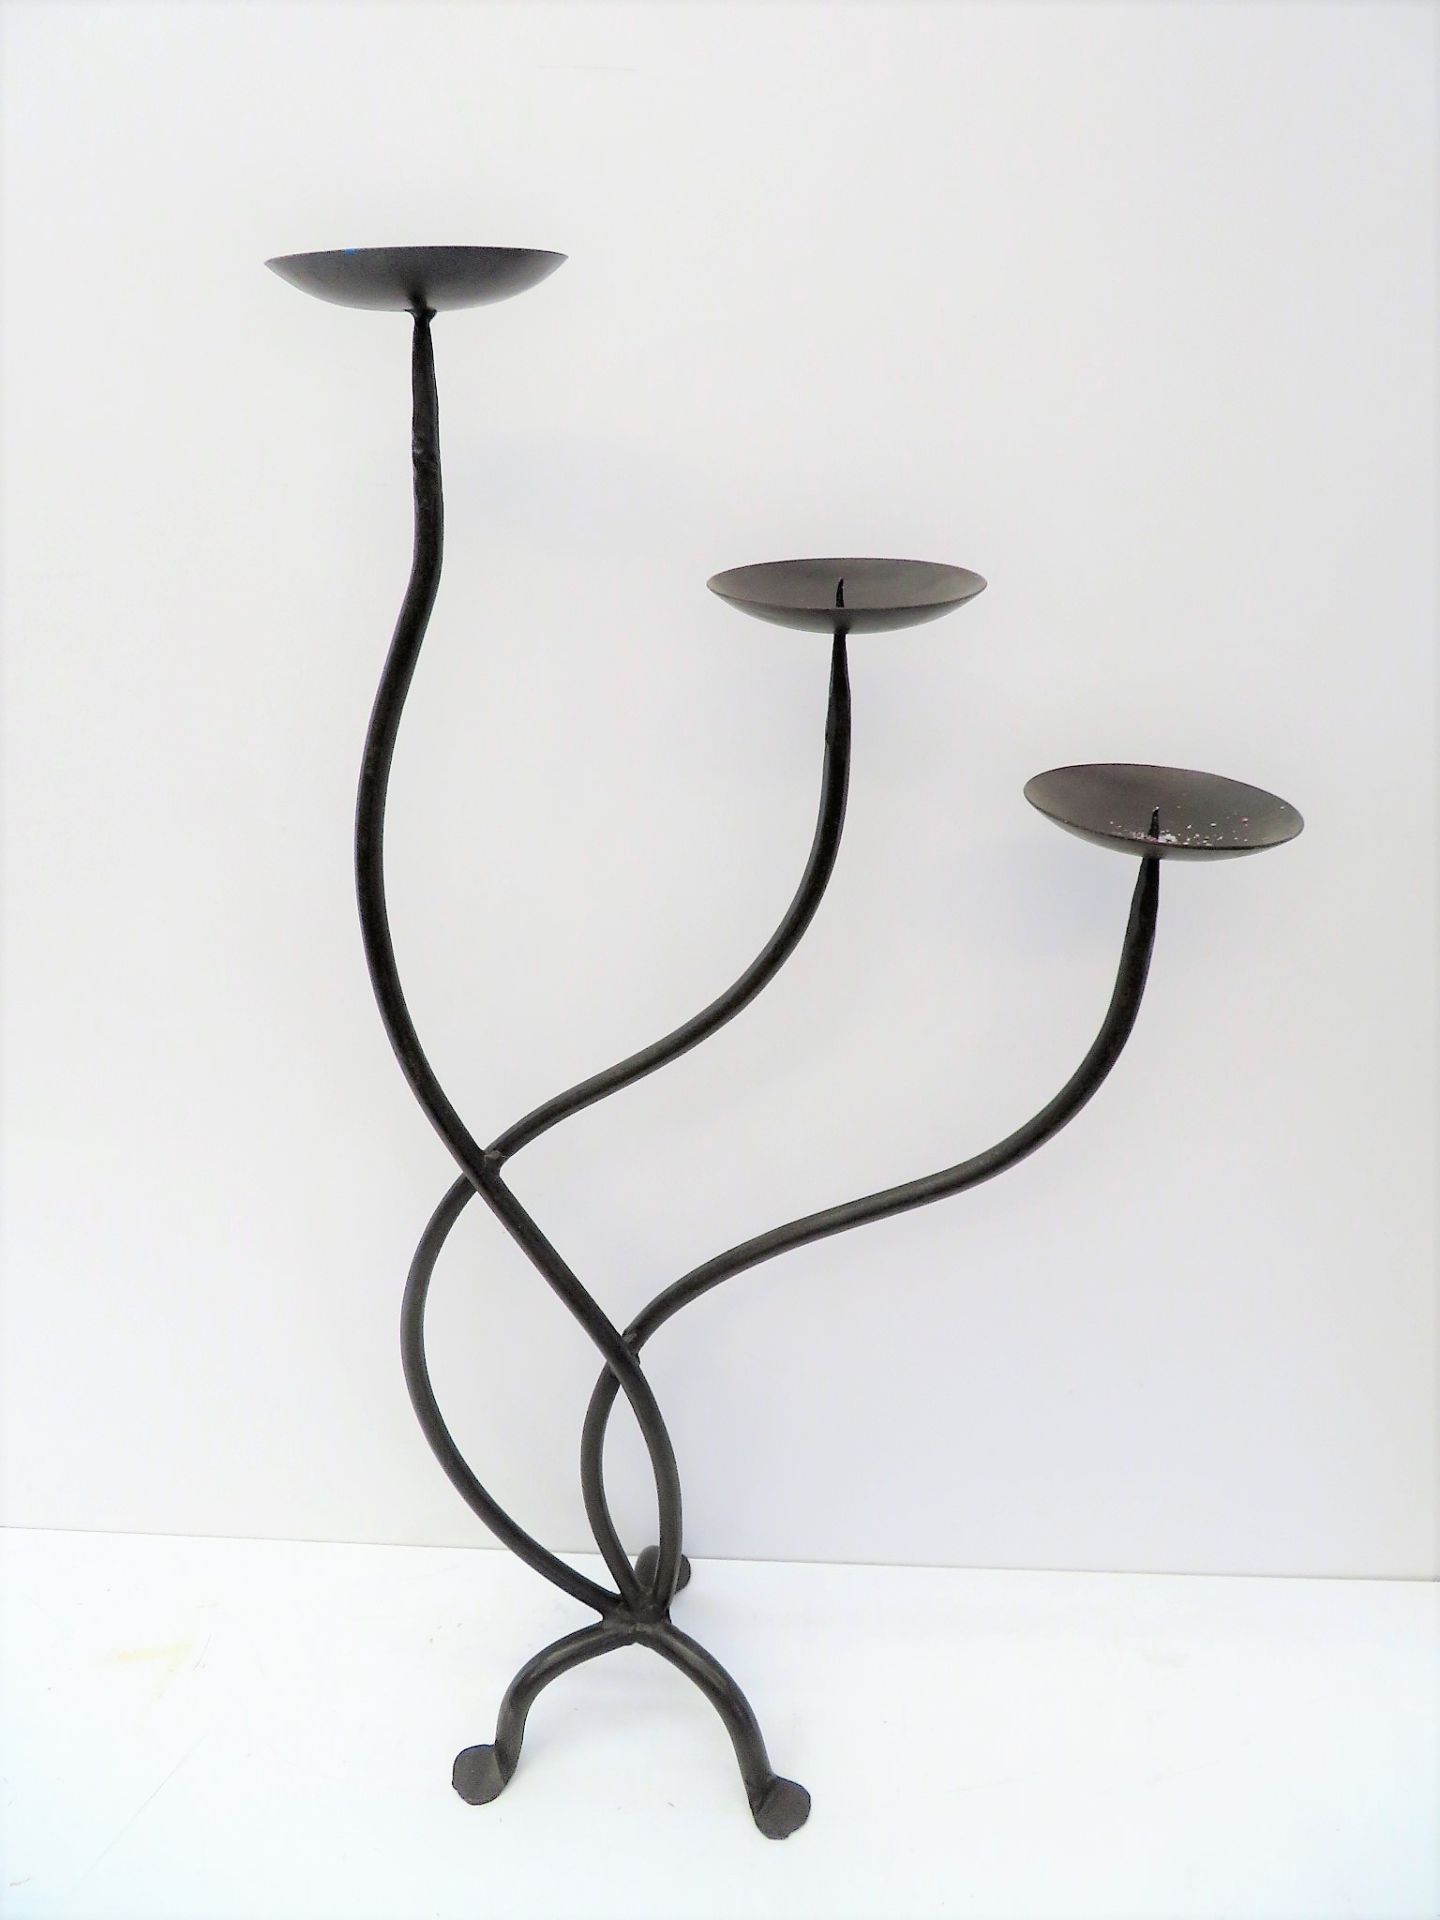 Designer Kerzenständer, Eisen, 3-flammig, auf 3 Füßen, davon ausgehend drei sich teils überlappende